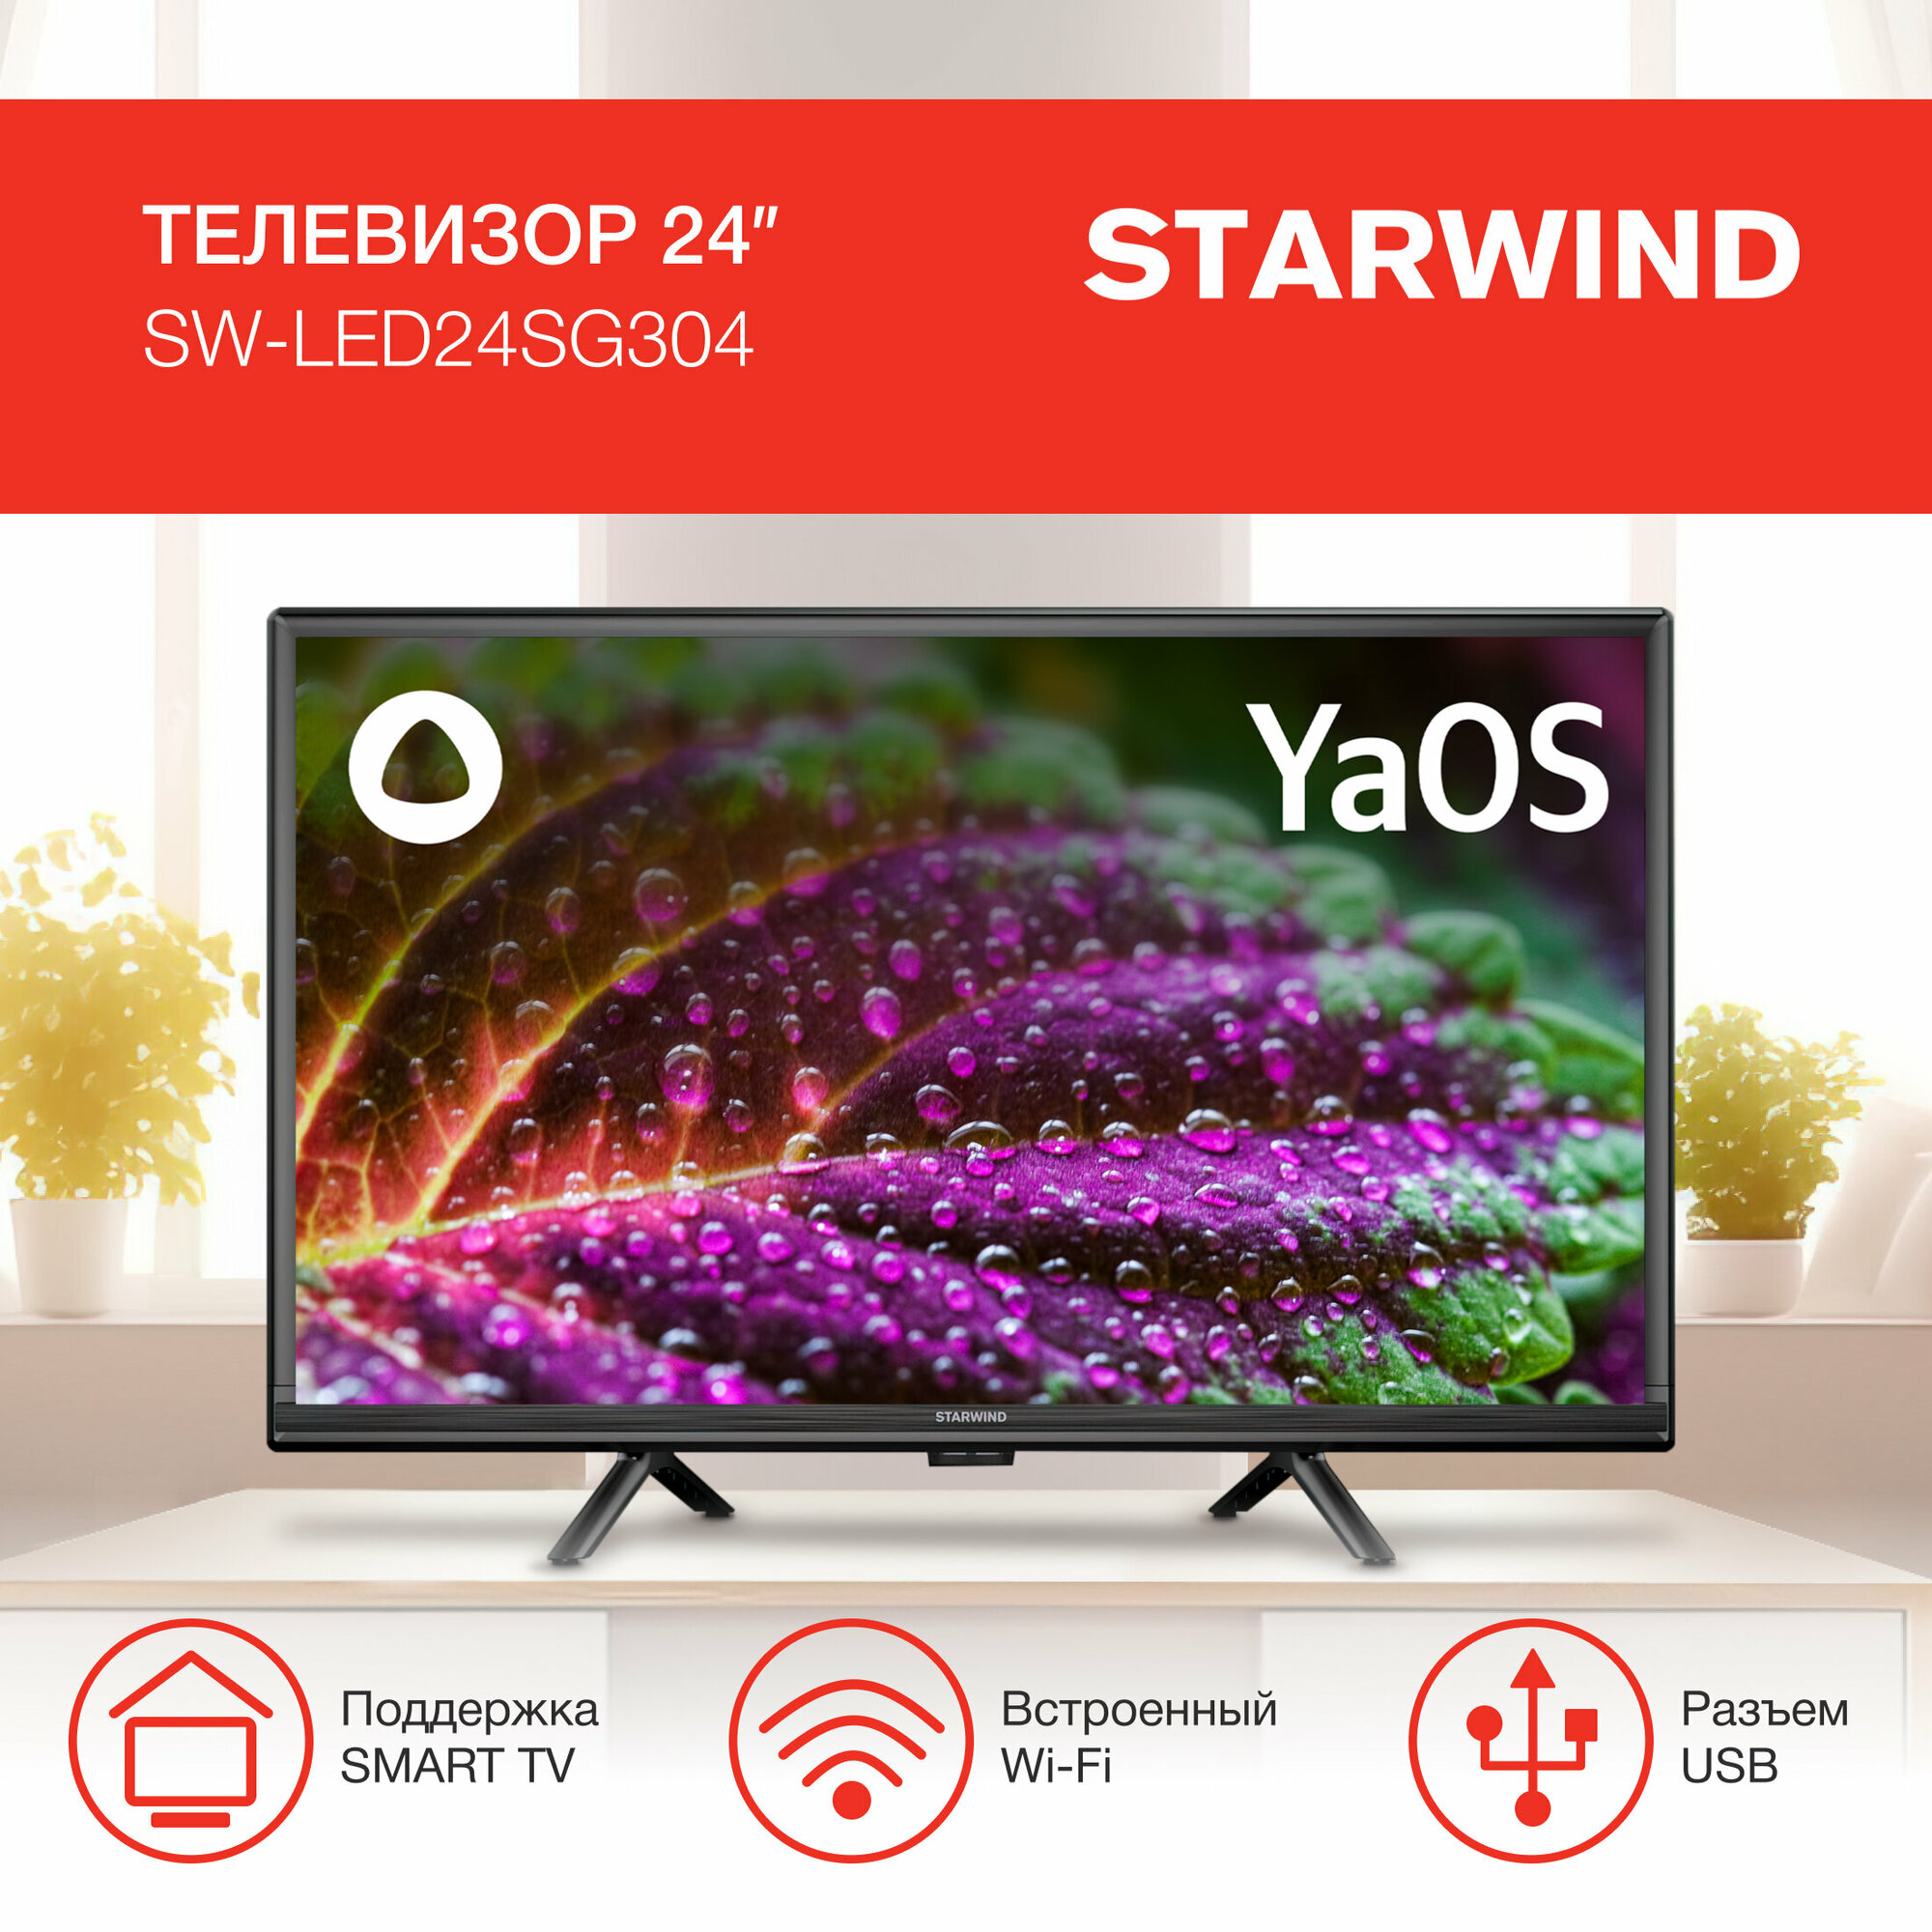 Телевизор LED Starwind 24" SW-LED24SG304 Яндекс. ТВ Slim Design черный/черный/HD/60Hz/DVB-T/DVB-T2/DVB-C/DVB-S/DVB-S2/USB/WiFi/Smart TV